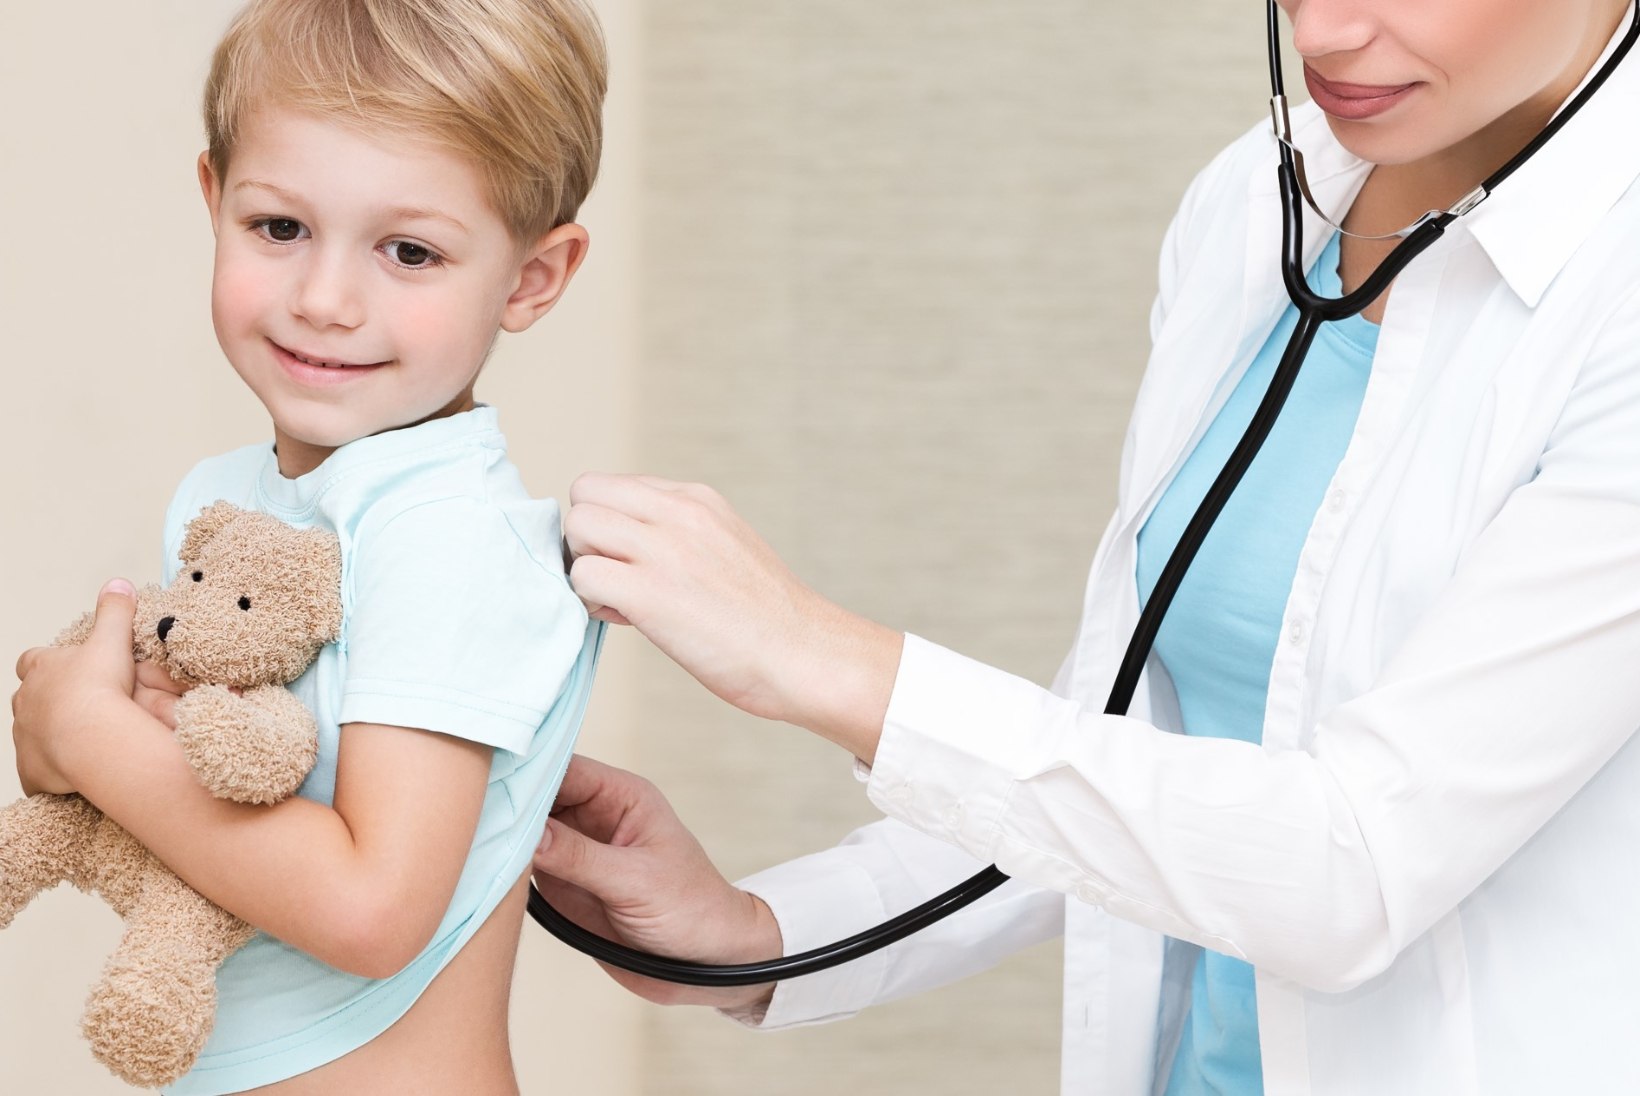 Millal võib laps pärast haigestumist lasteaeda minna?